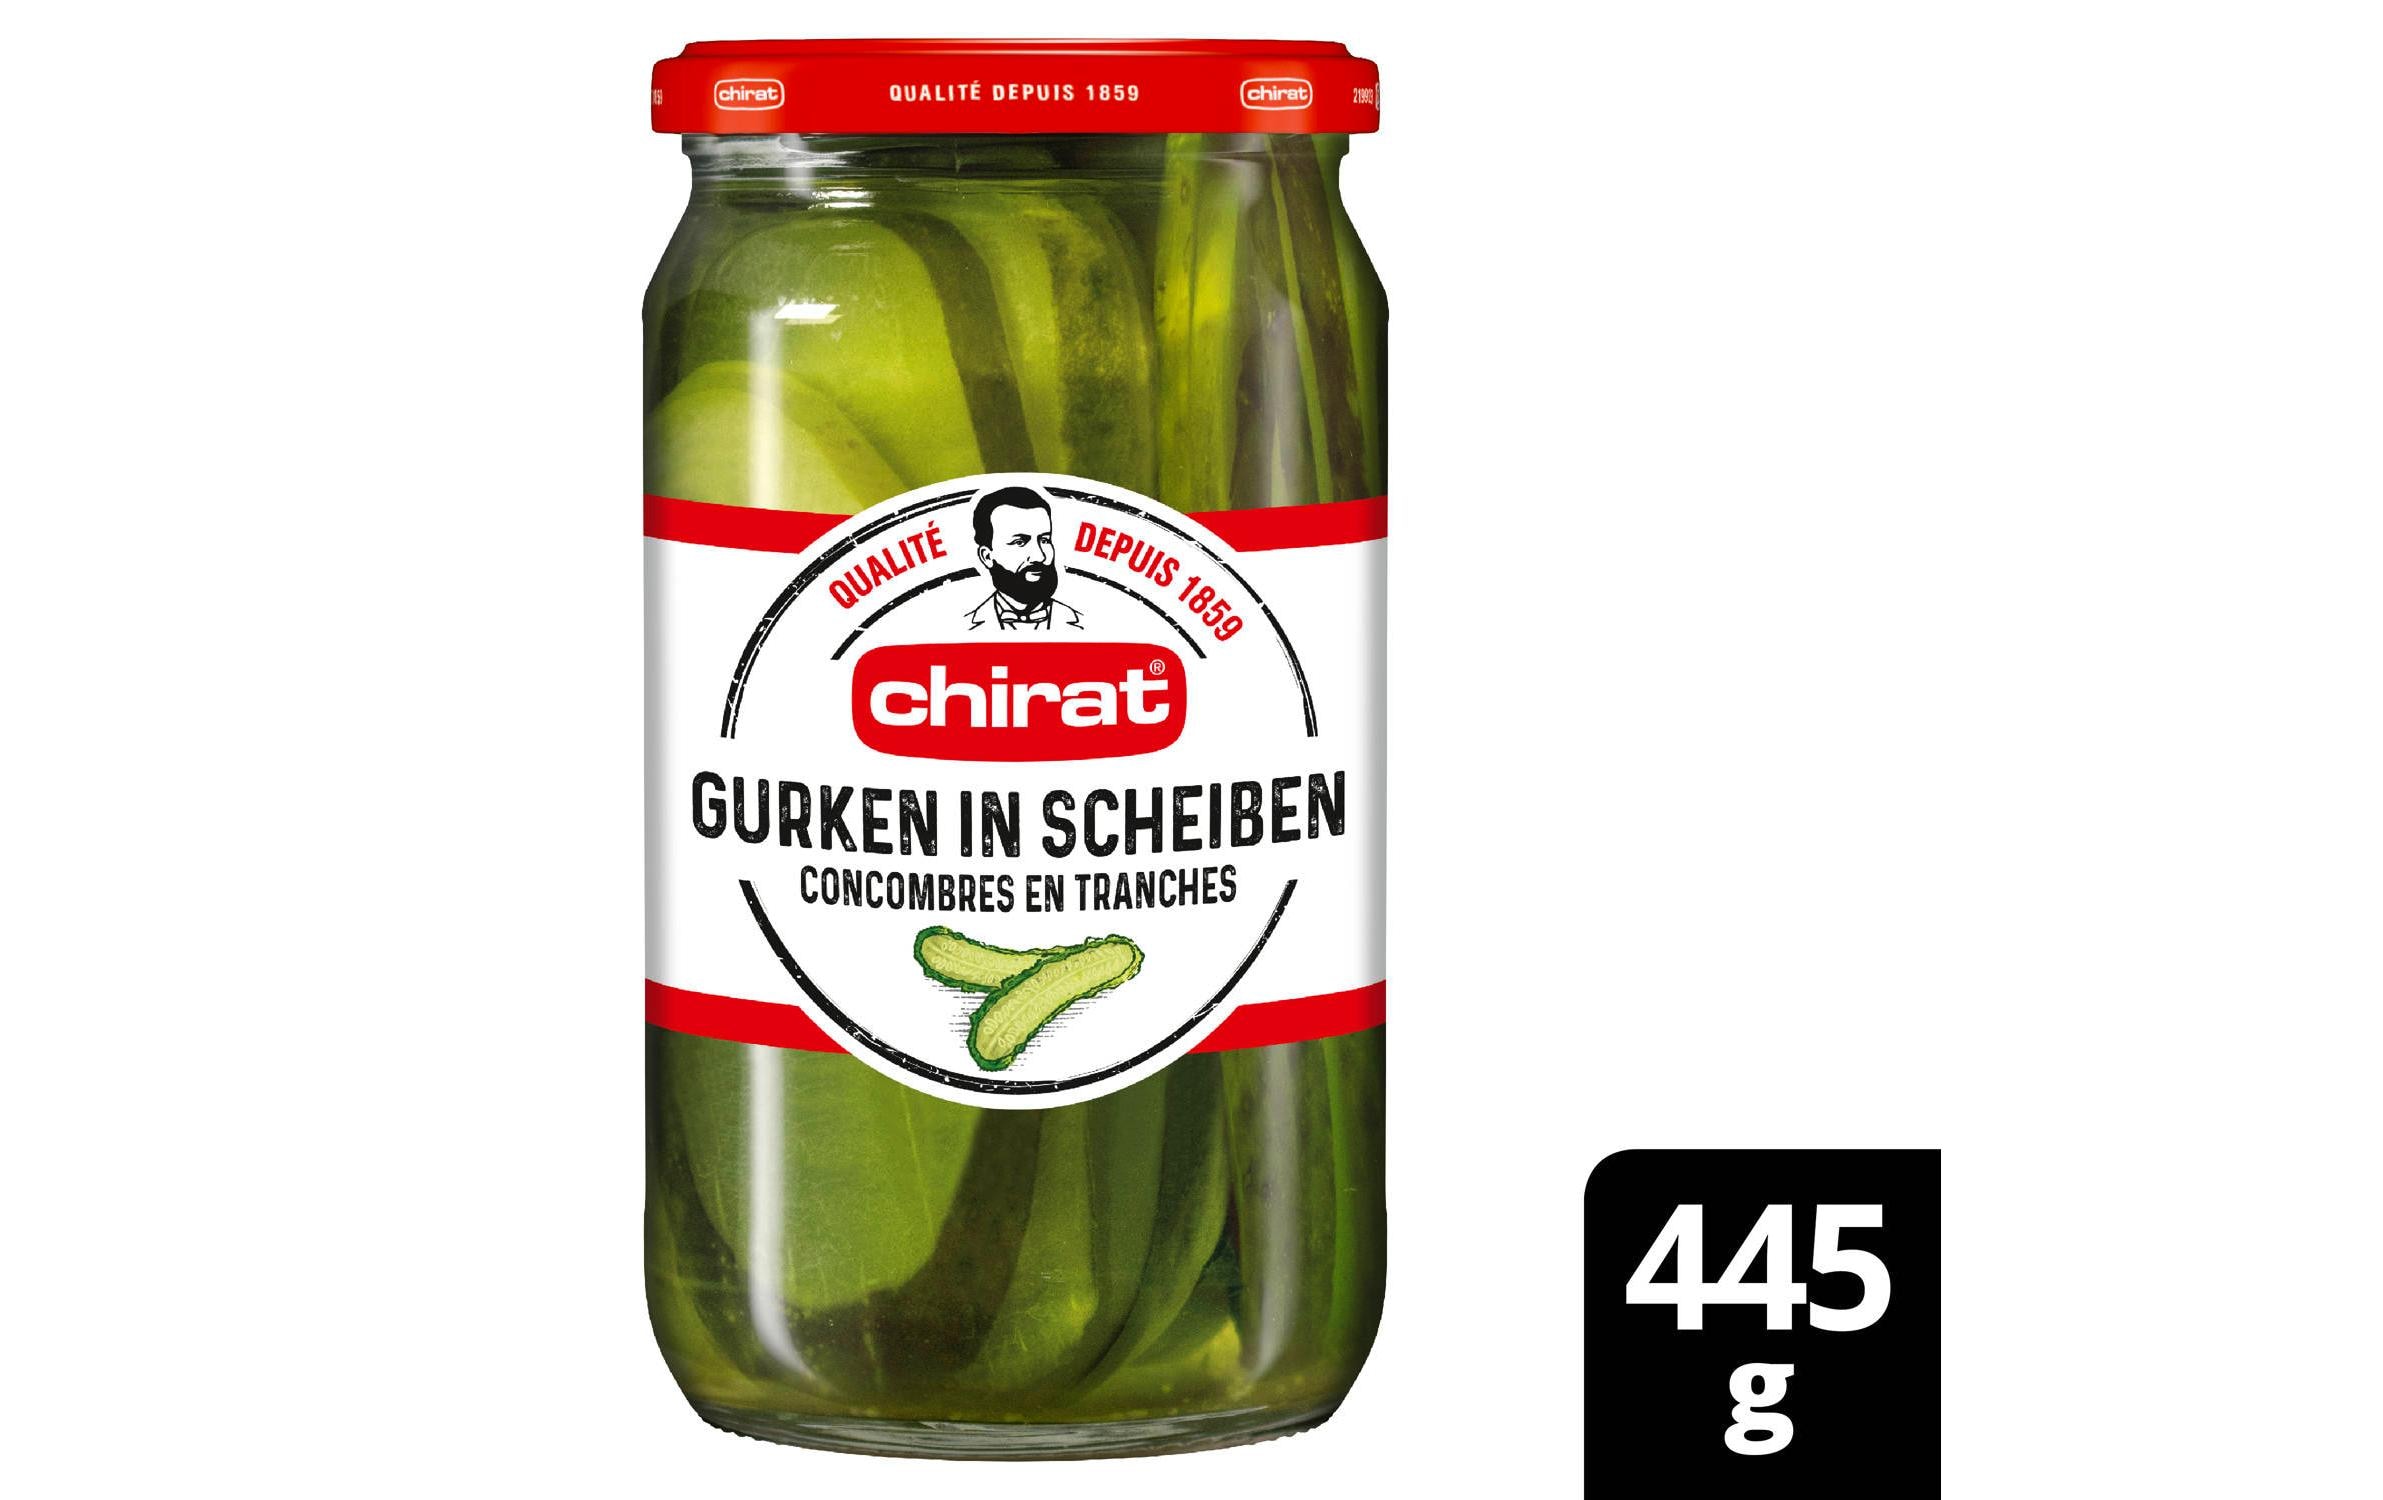 Chirat Gurken in Scheiben 445 g